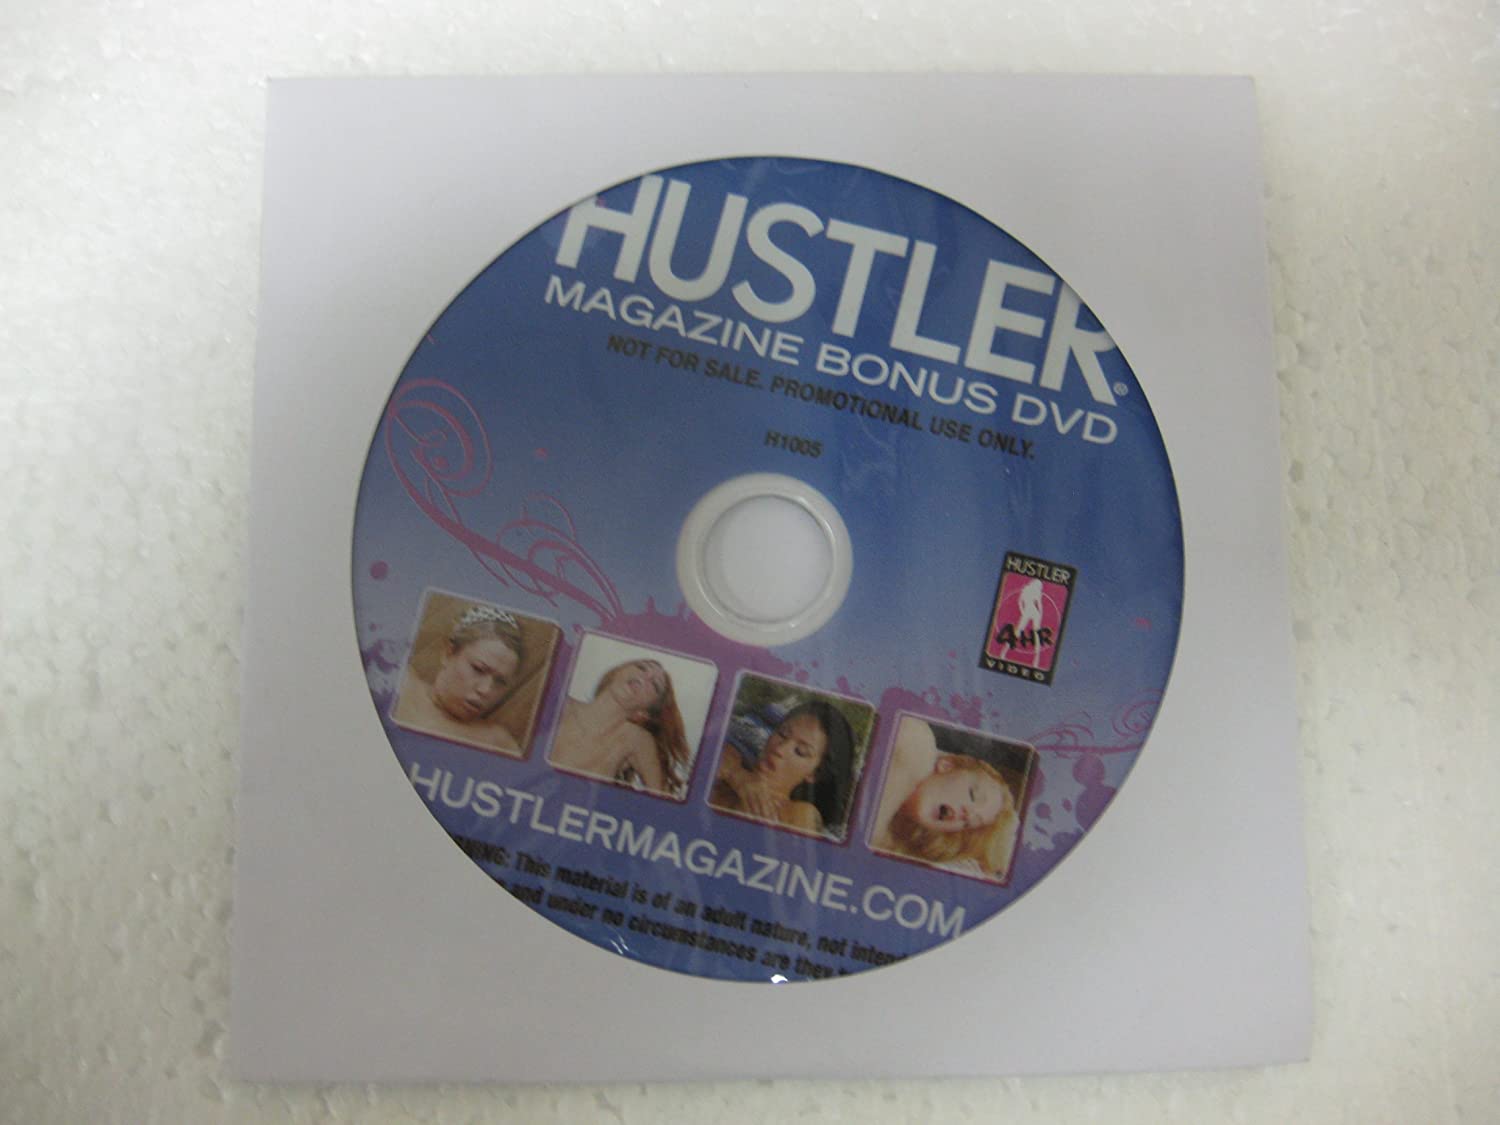 Bonus dvd hustler